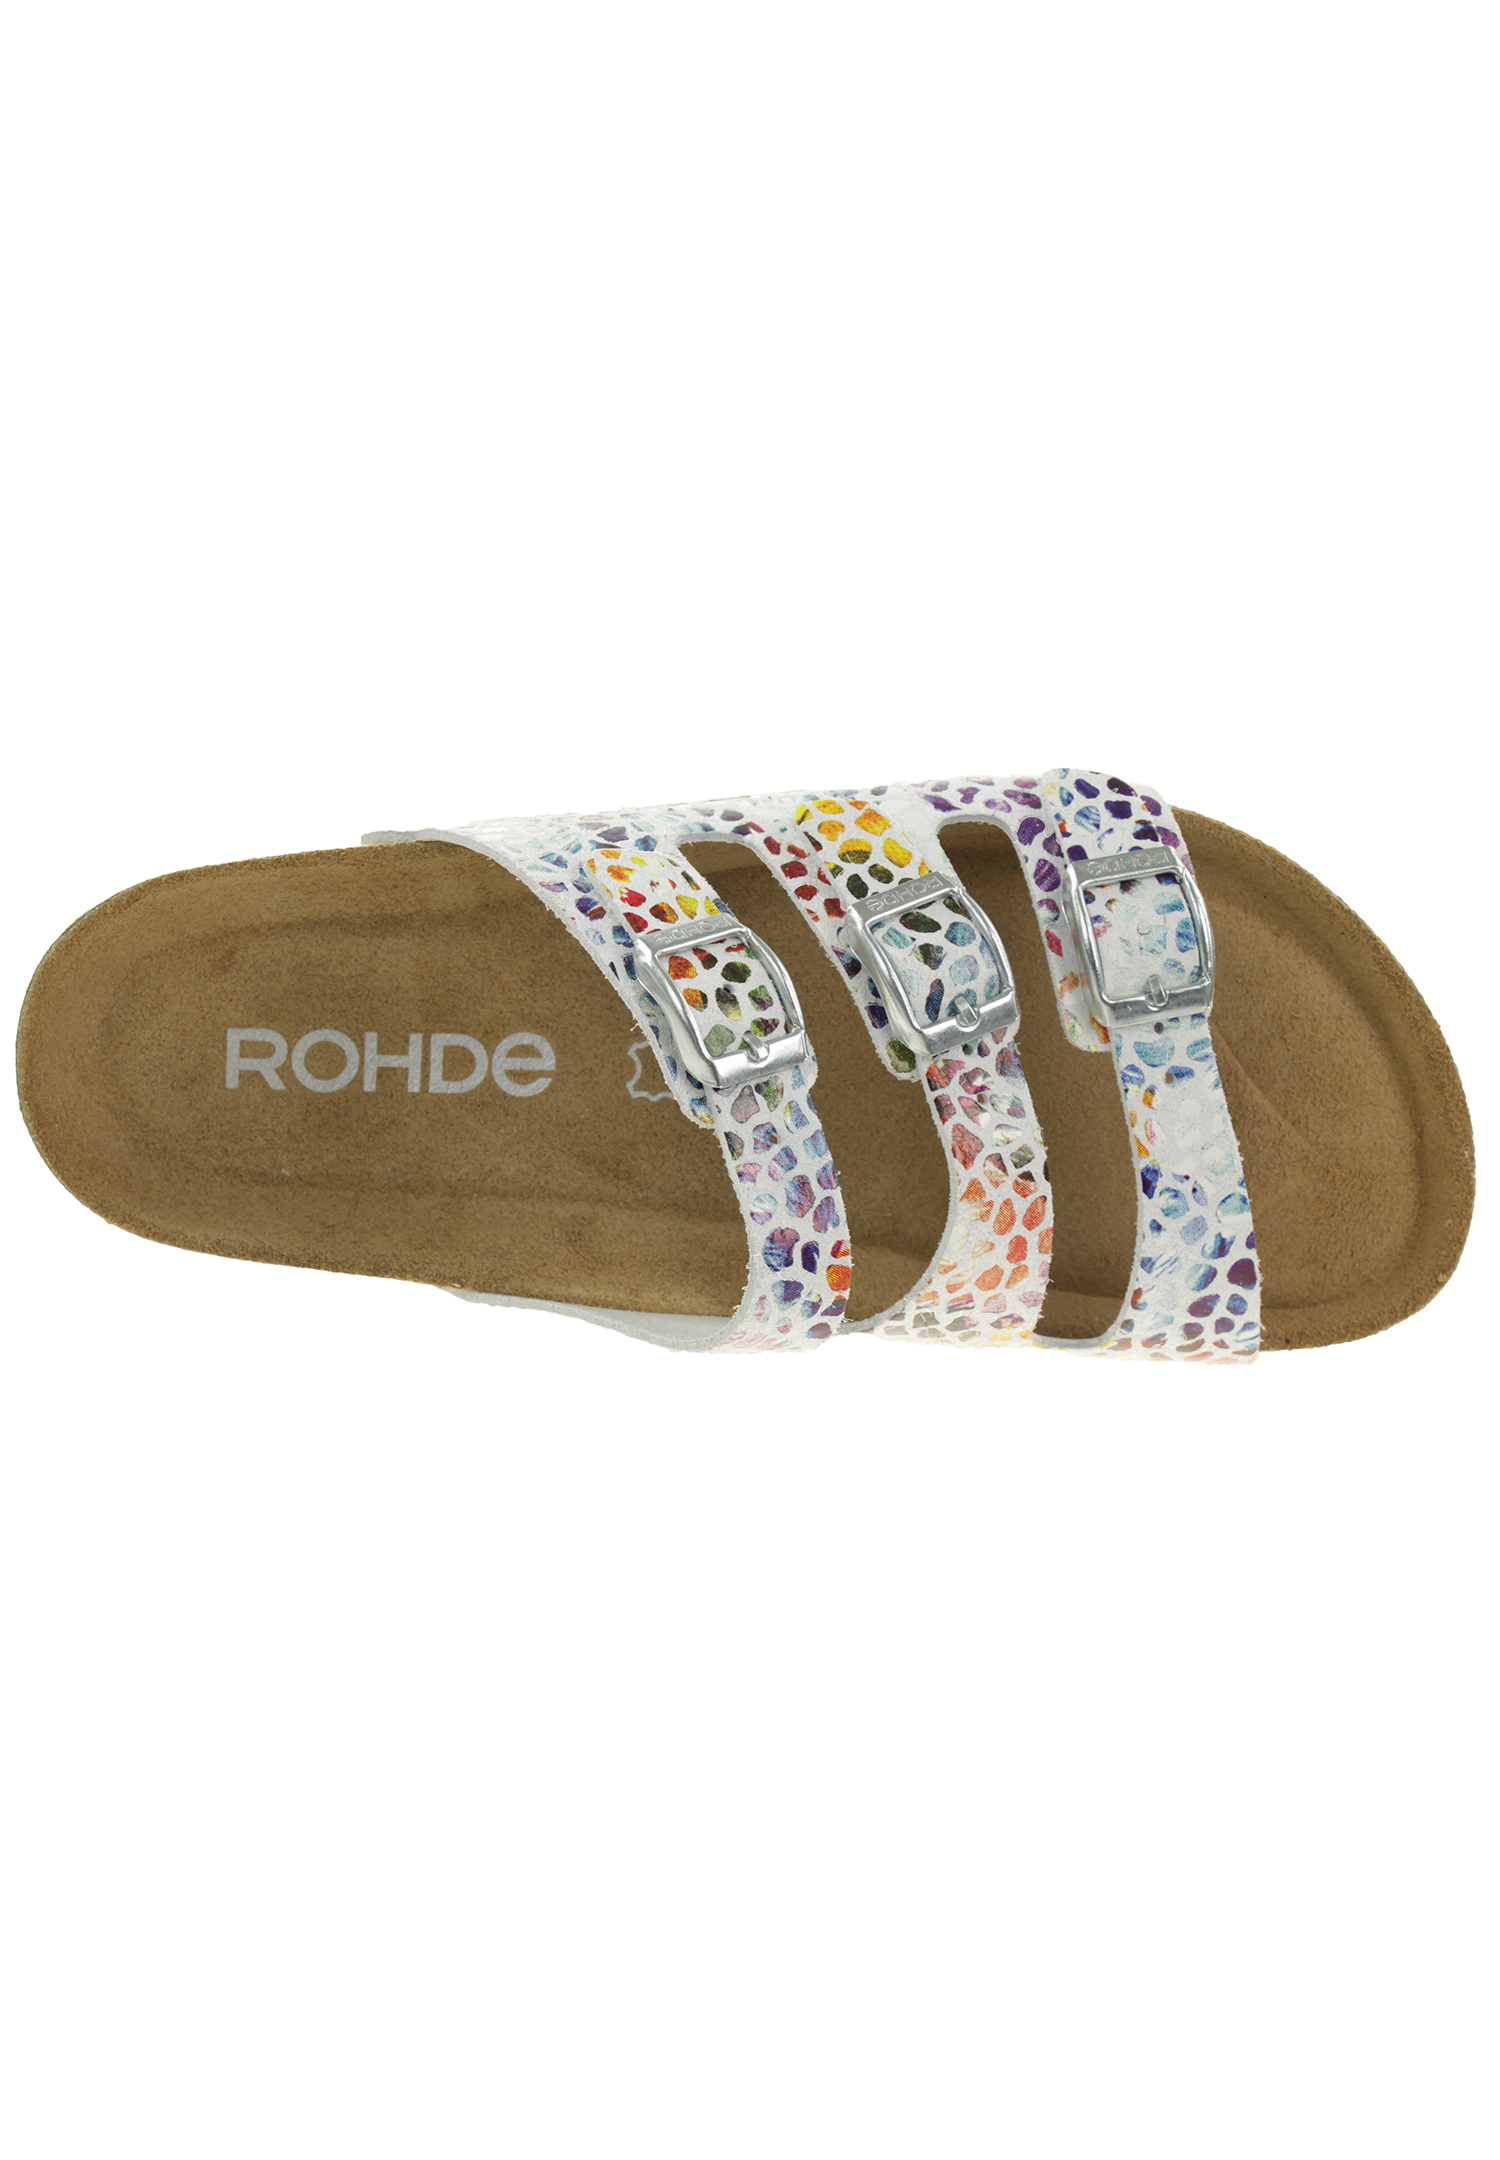 Rohde Sunnys N´13 Damen Pantolette Hausschuhe Sandale 5620 Weiß 